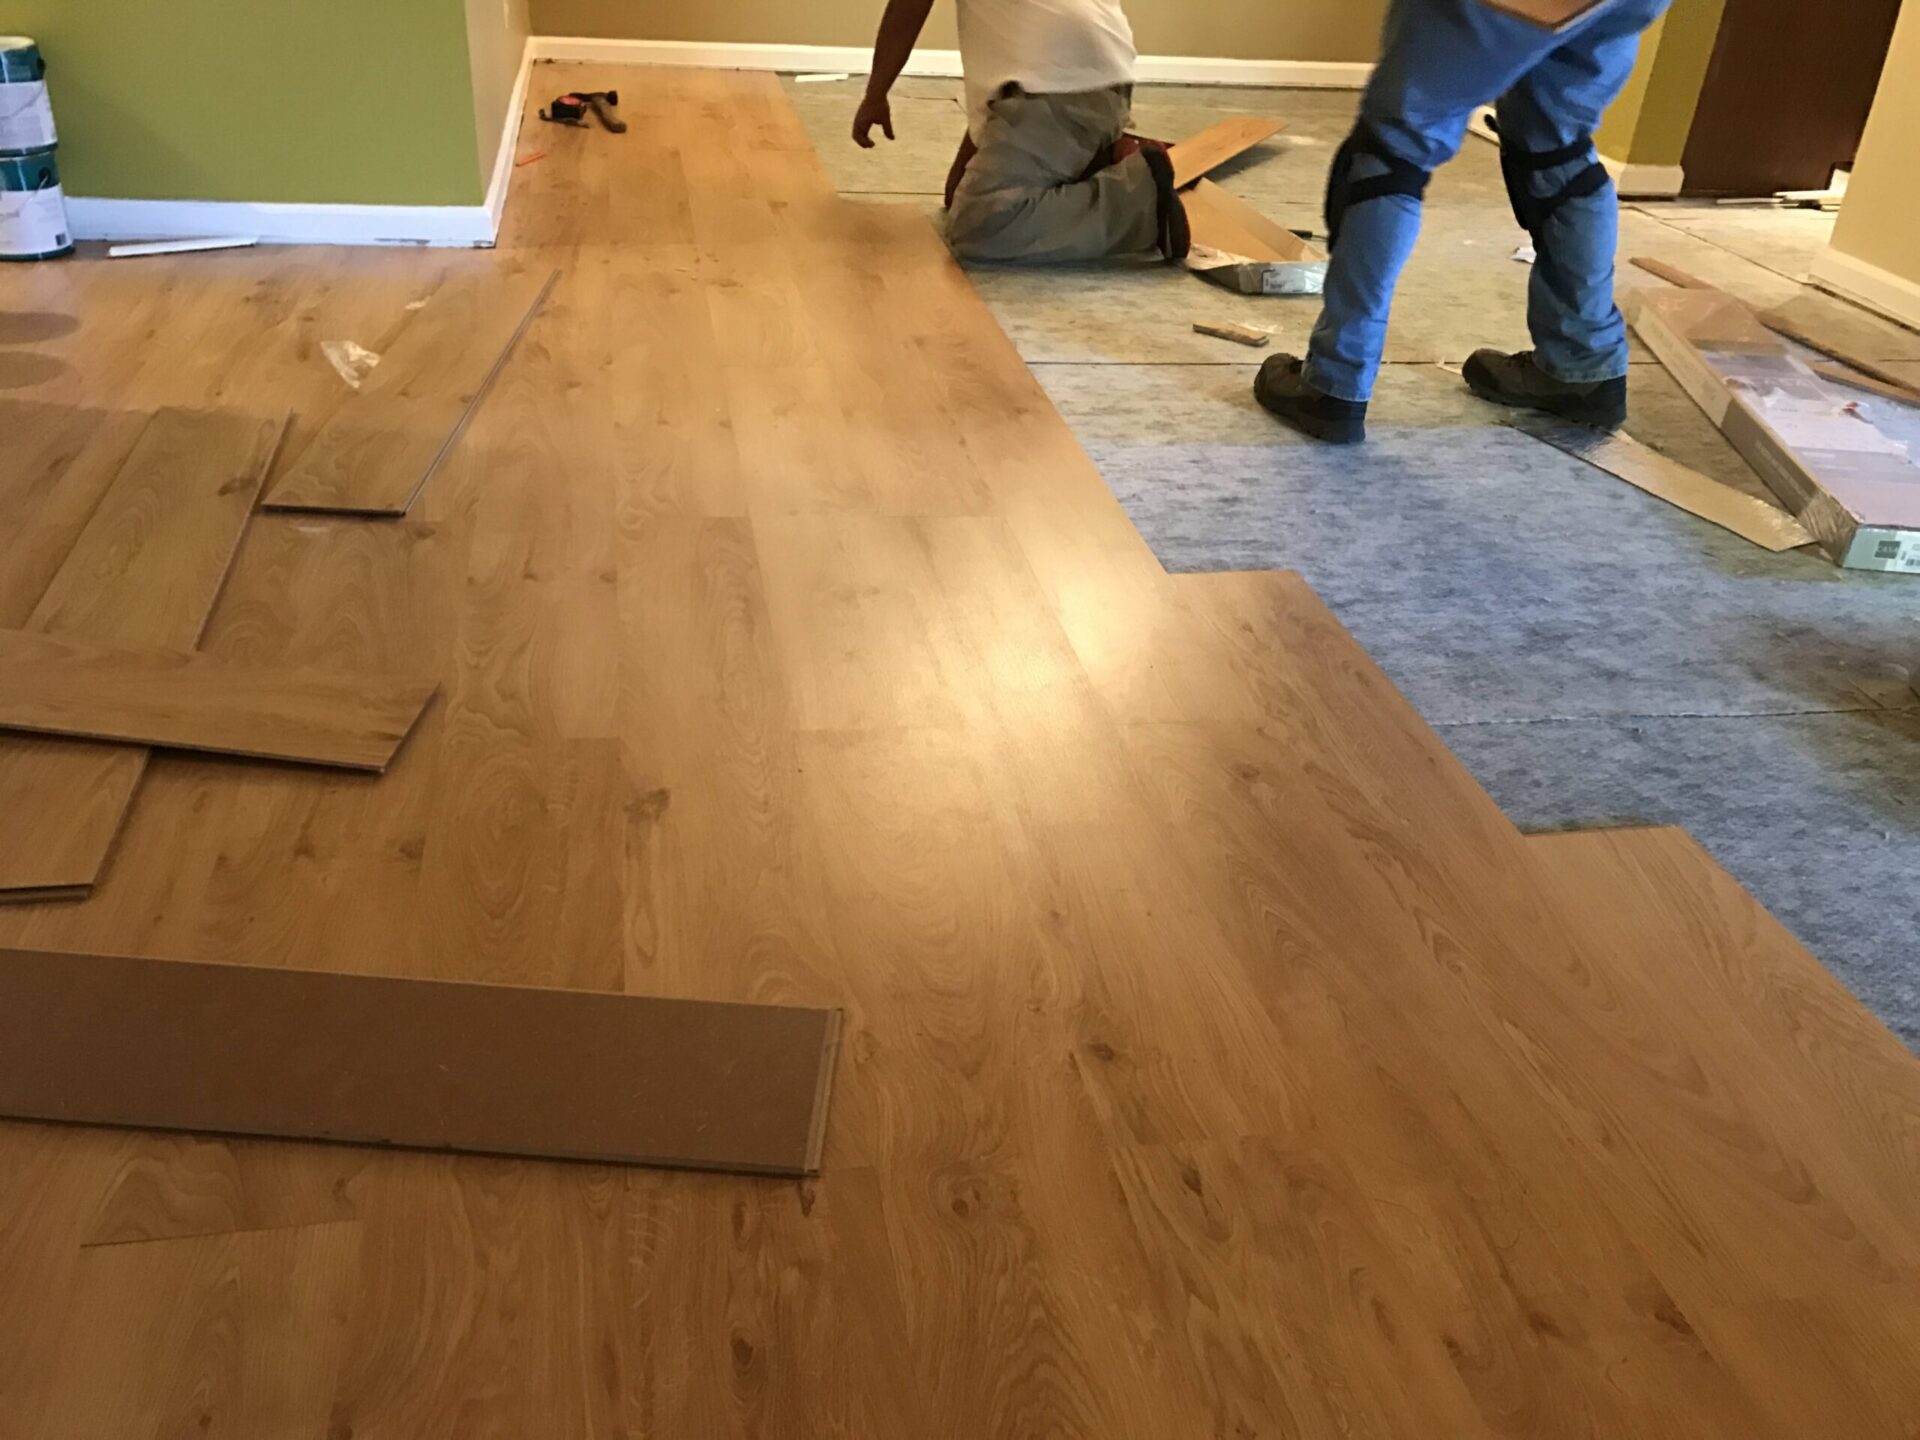 Flooring installment